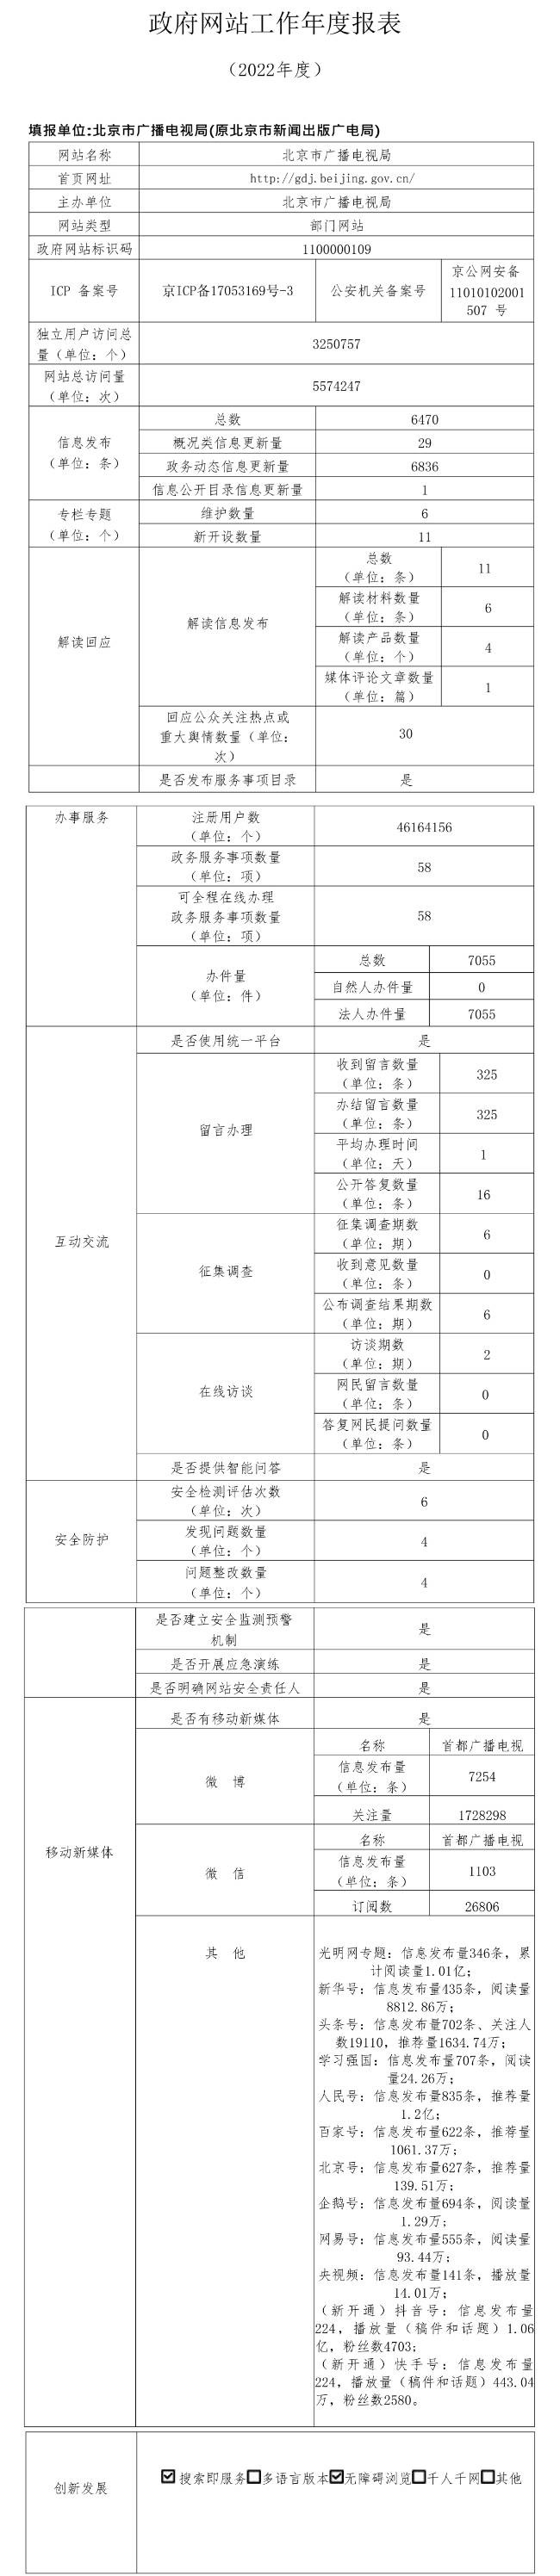 北京市广播电视局2022年政府网站年度工作报表